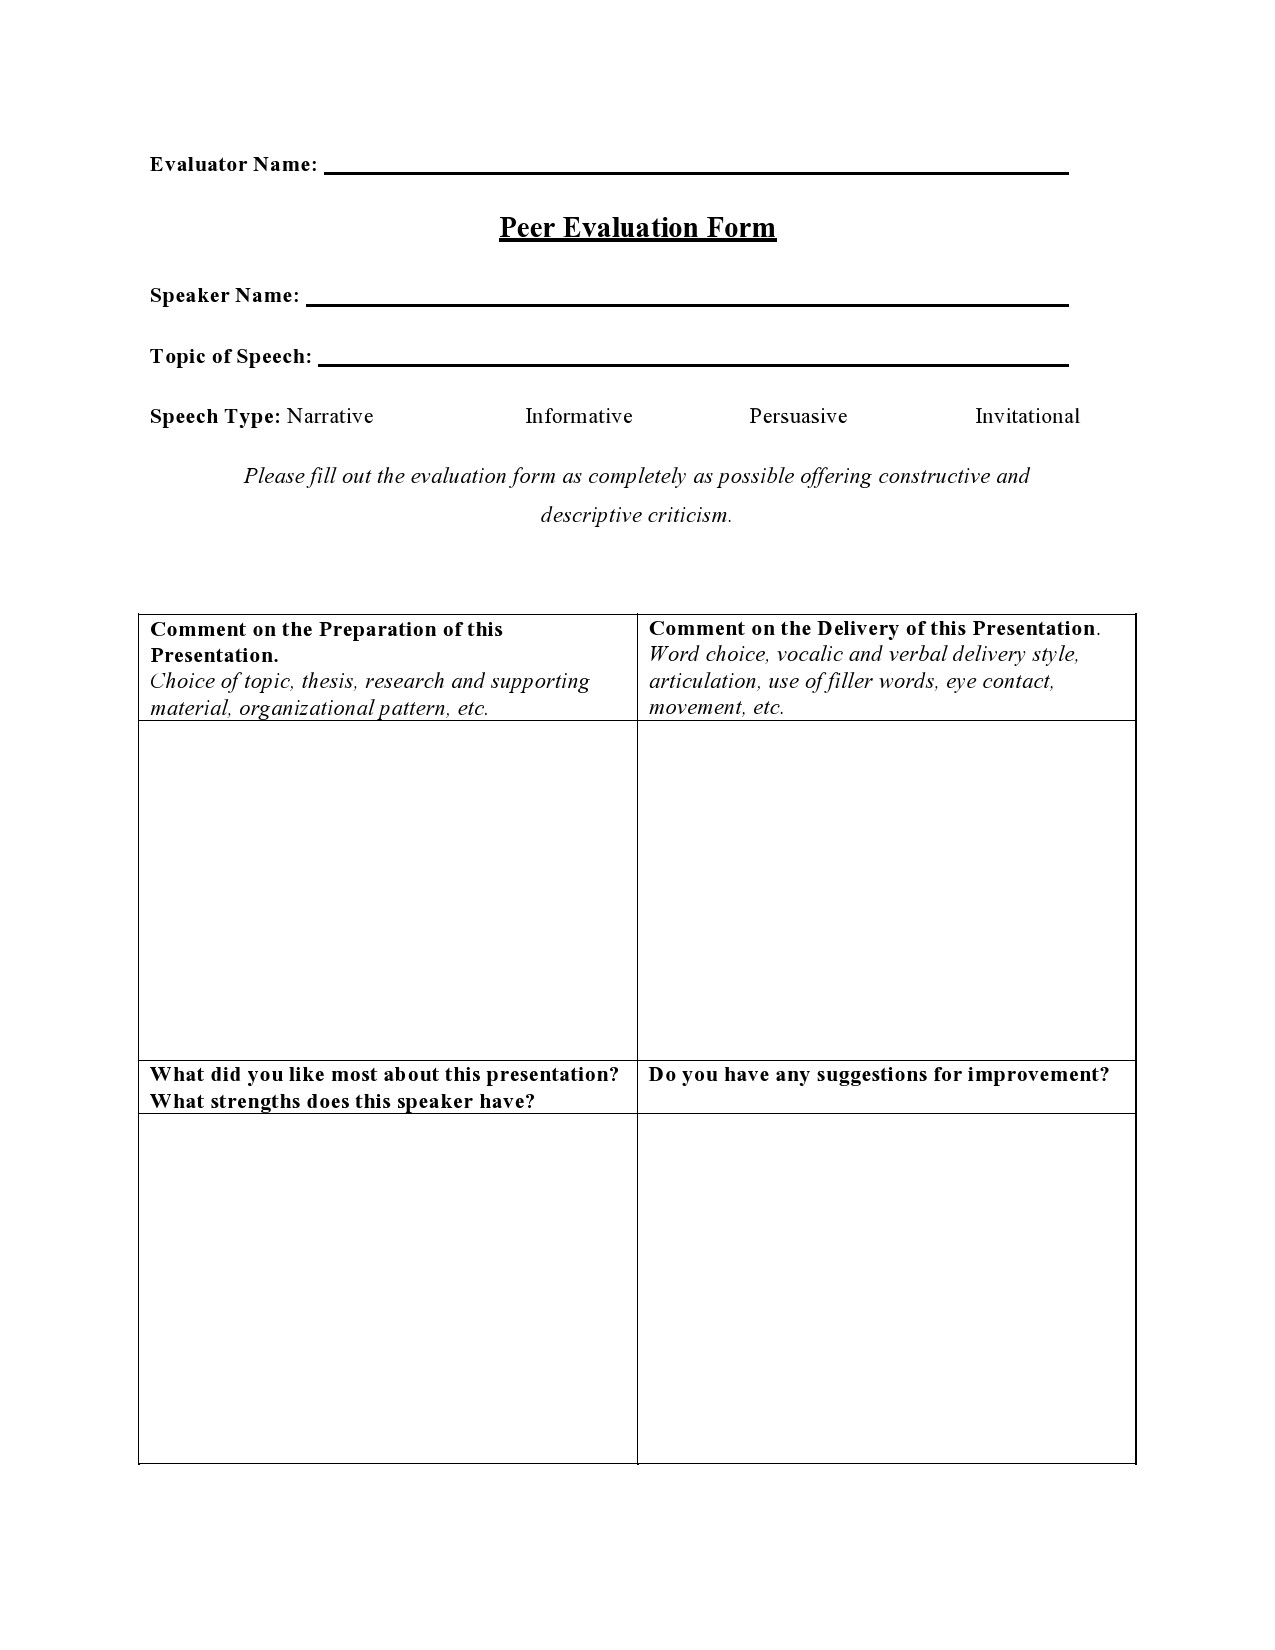 Free peer evaluation form 31